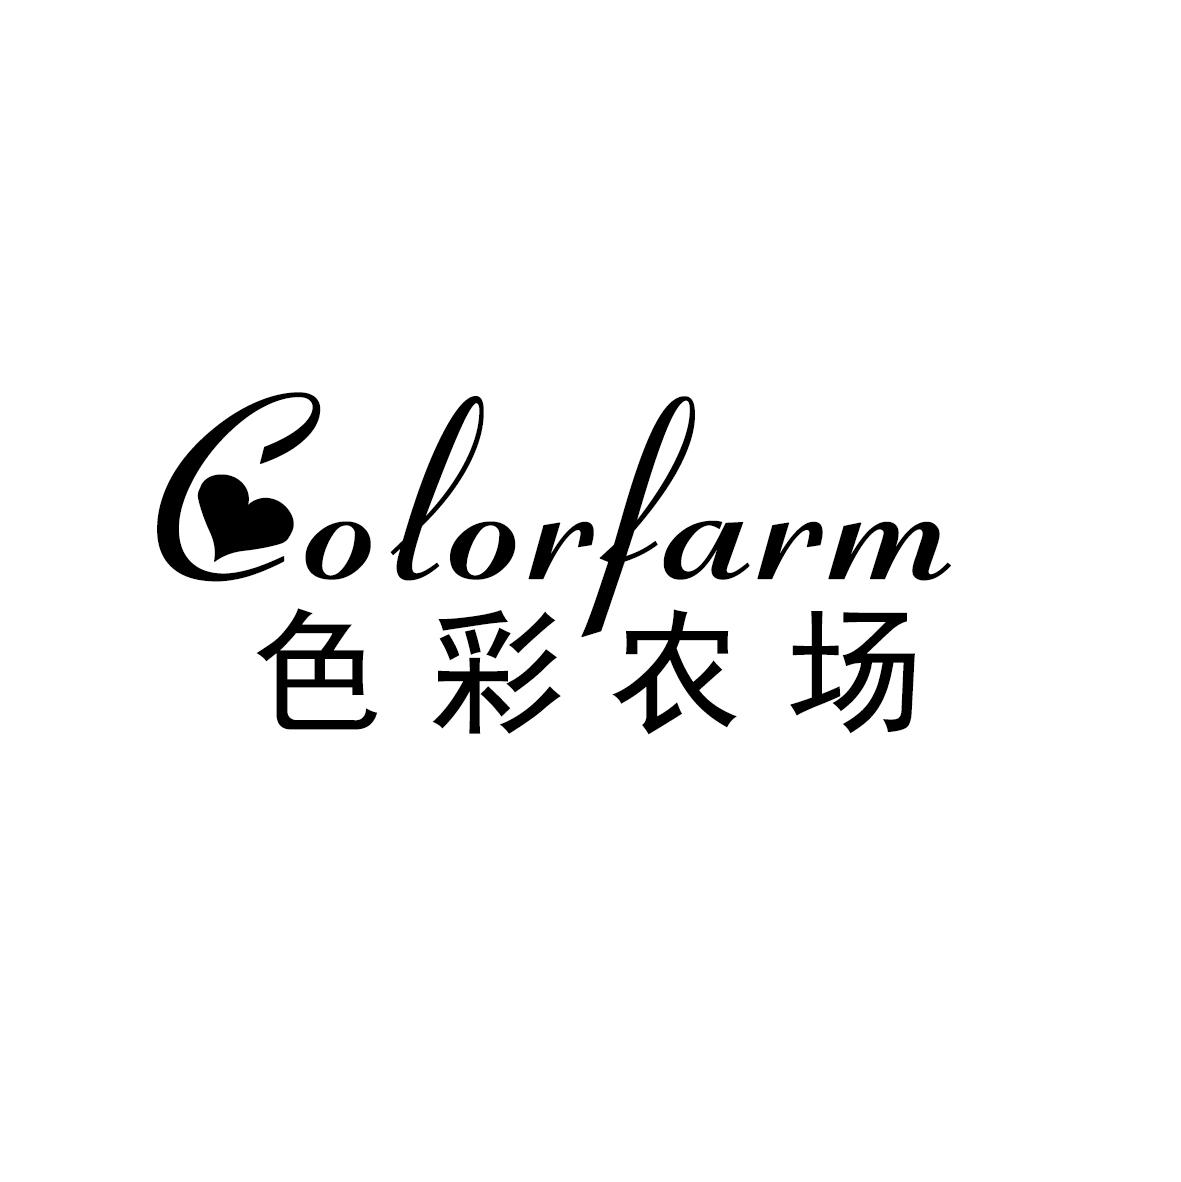 色彩农场 COLORFARM